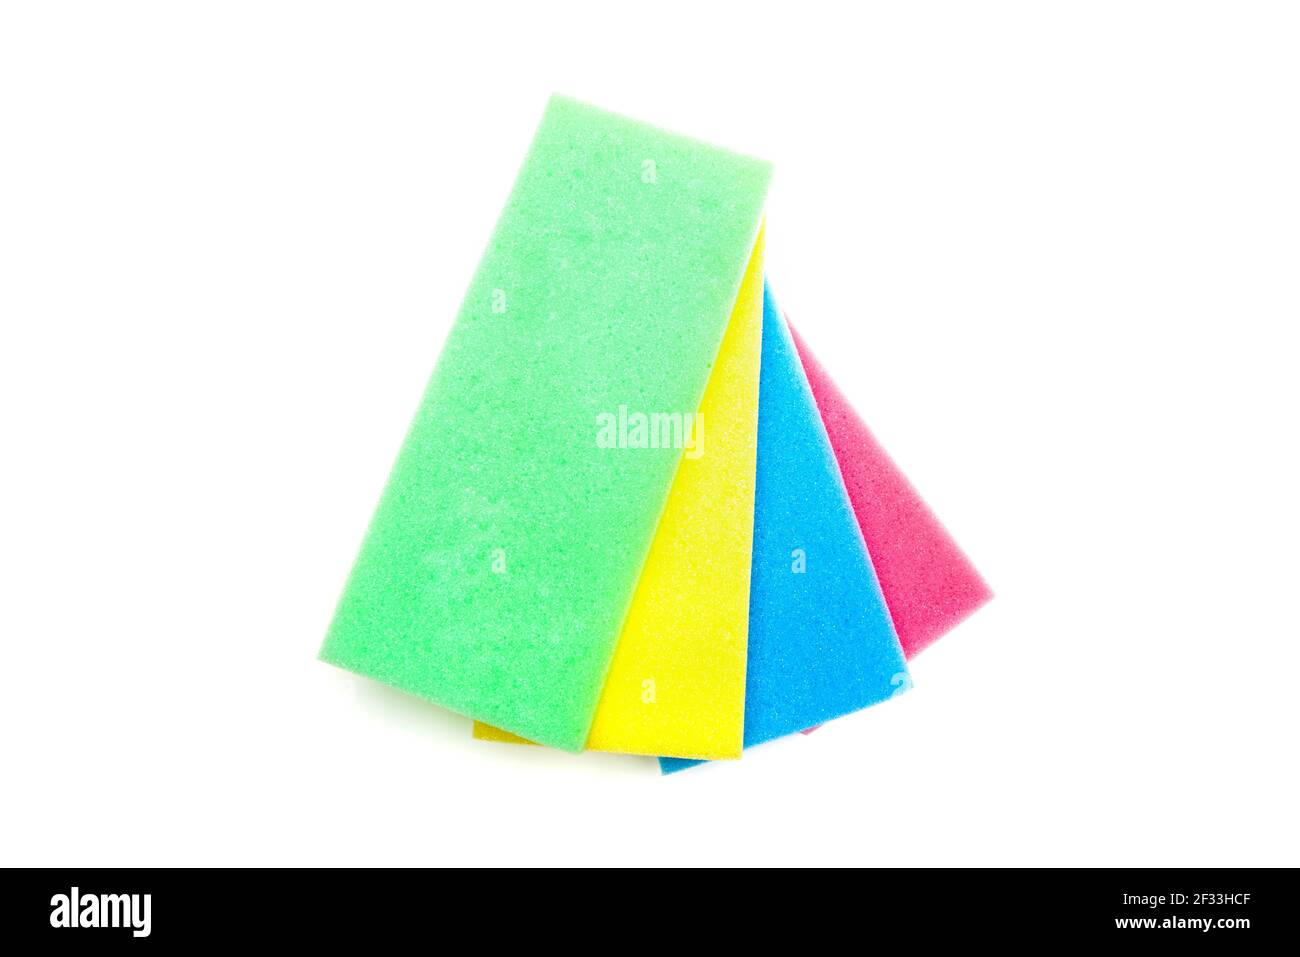 Spugne sintetiche rettangolari colorate per la pulizia, su sfondo bianco Foto Stock